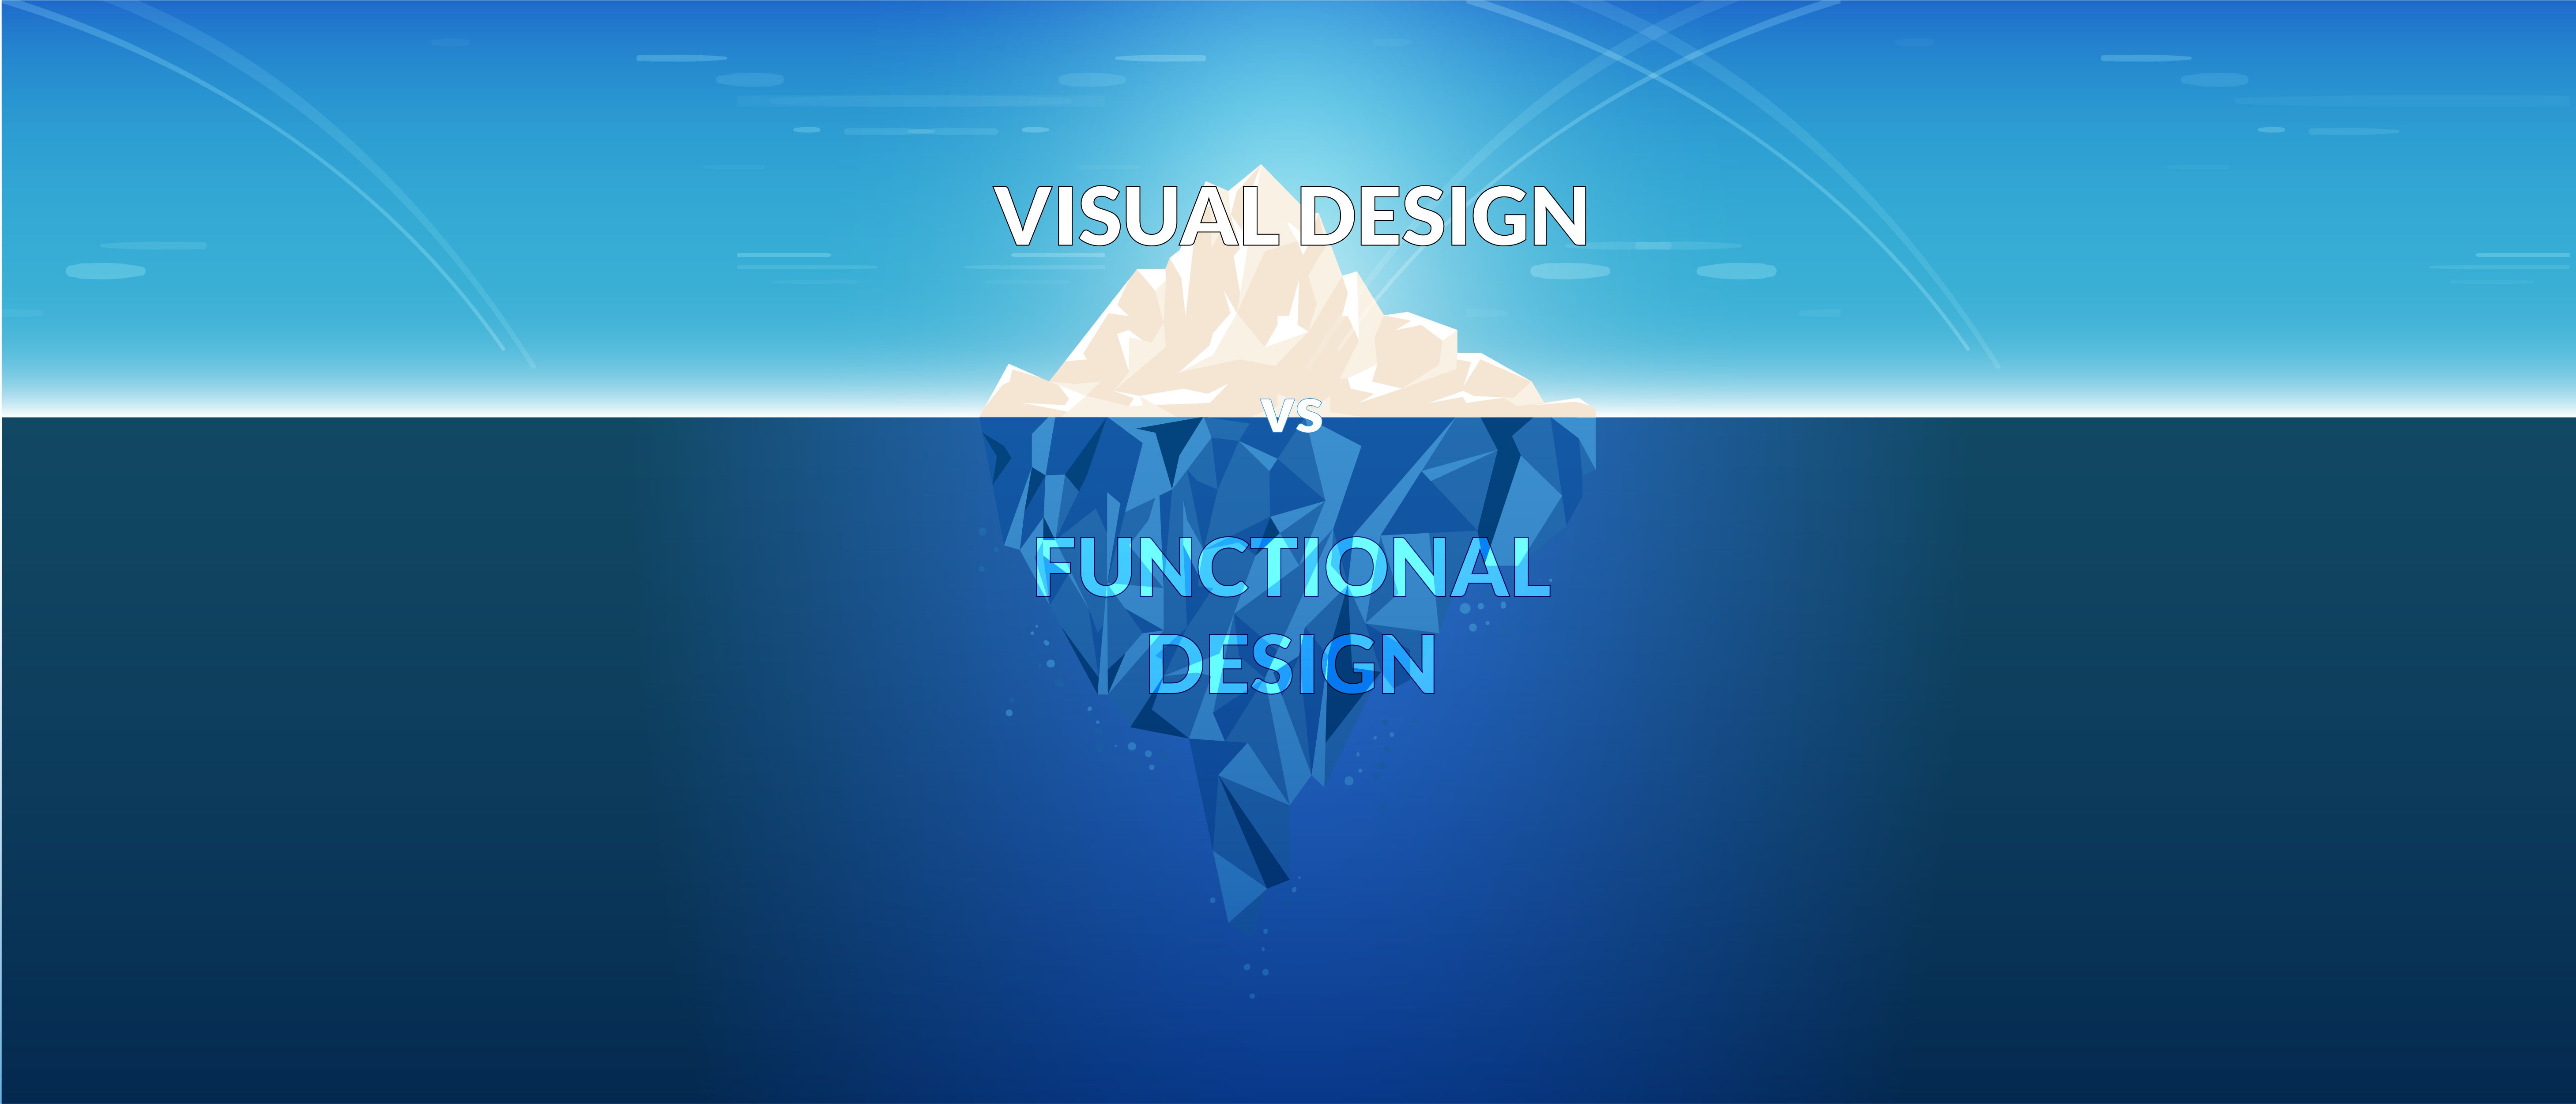 Битва дизайнеров: визуальный дизайн против функционального дизайна